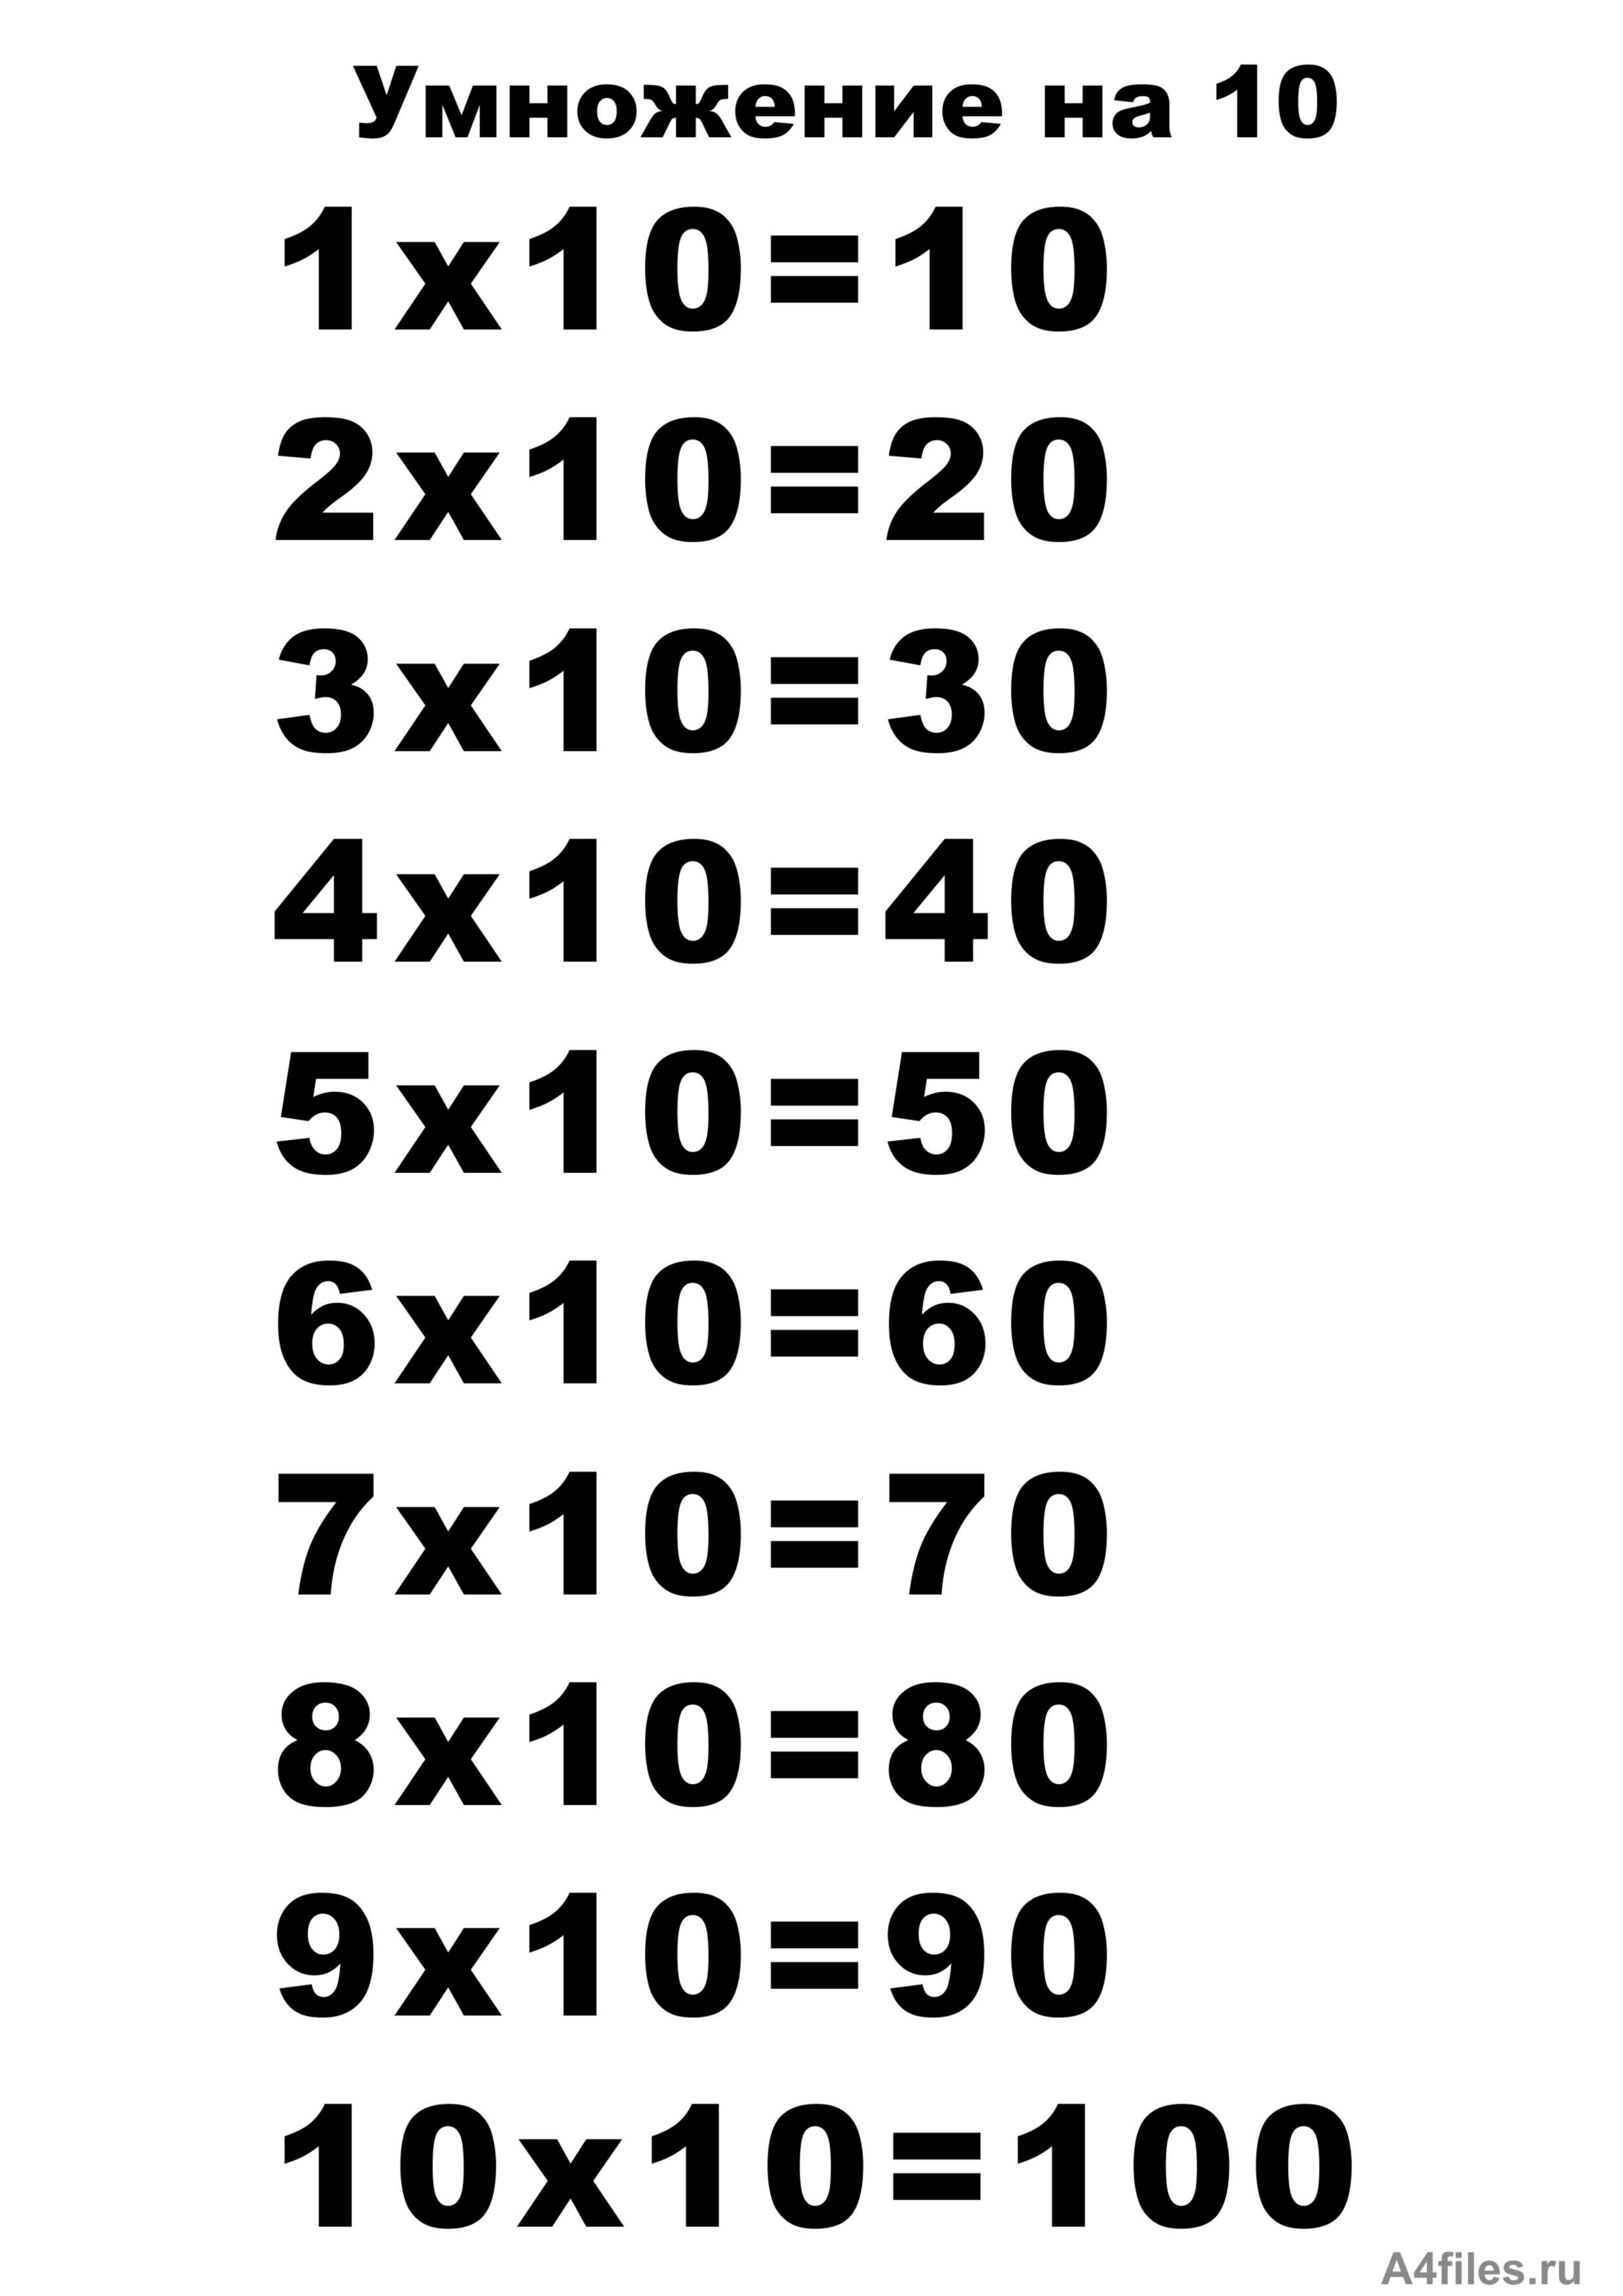 53 умножить на 10. Таблицв умнажения на "10. Таблица умножения на 10 распечатать а4 Формат. Таблица на 10. Т͇а͇б͇л͇и͇ц͇а͇ У͇М͇Н͇О͇Ж͇Е͇Н͇И͇Й͇.